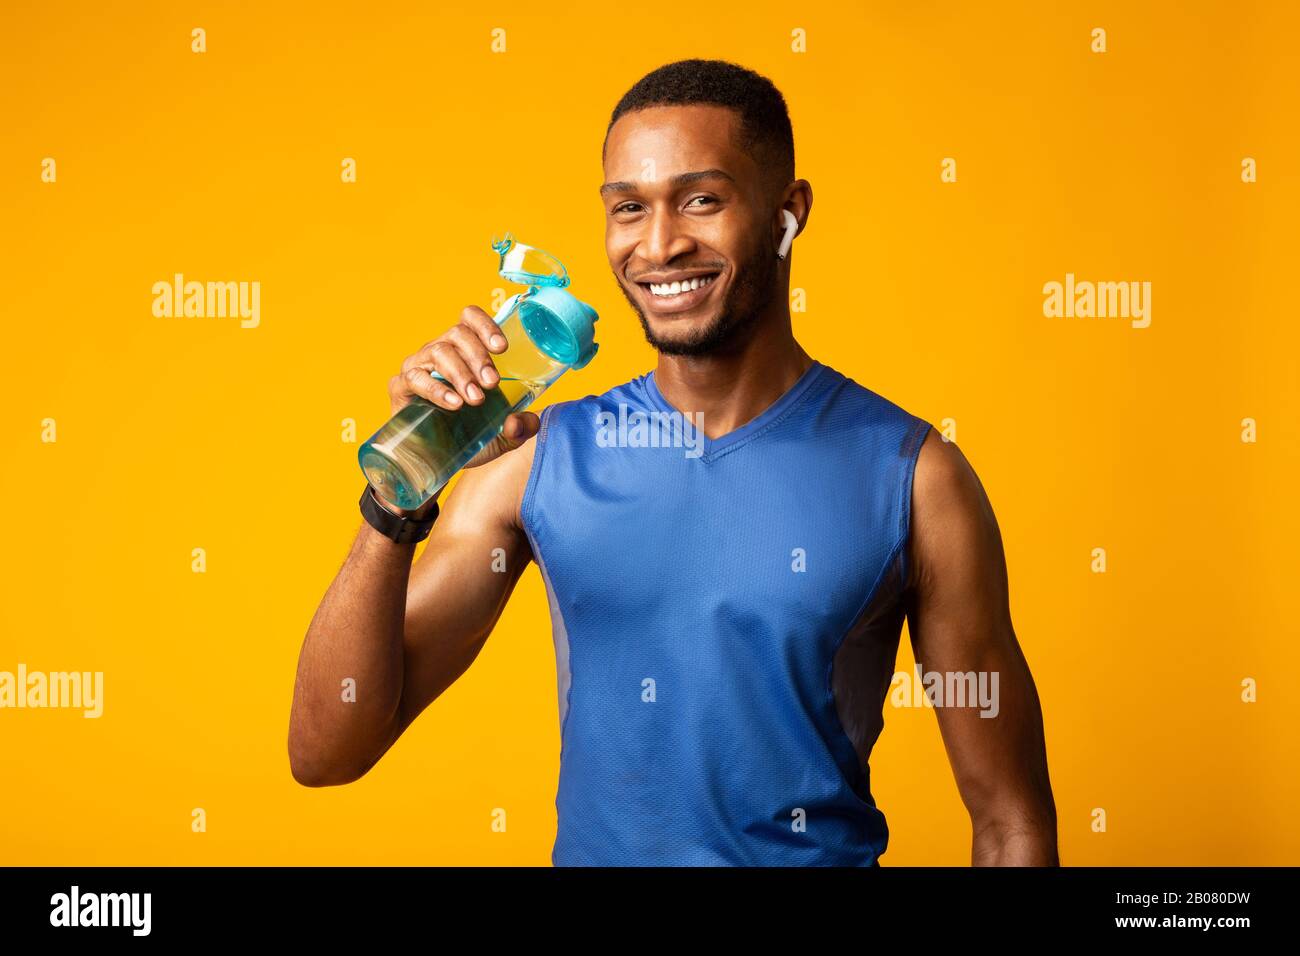 Un homme sportif noir en bonne santé qui boit de l'eau minérale Photo Stock  - Alamy